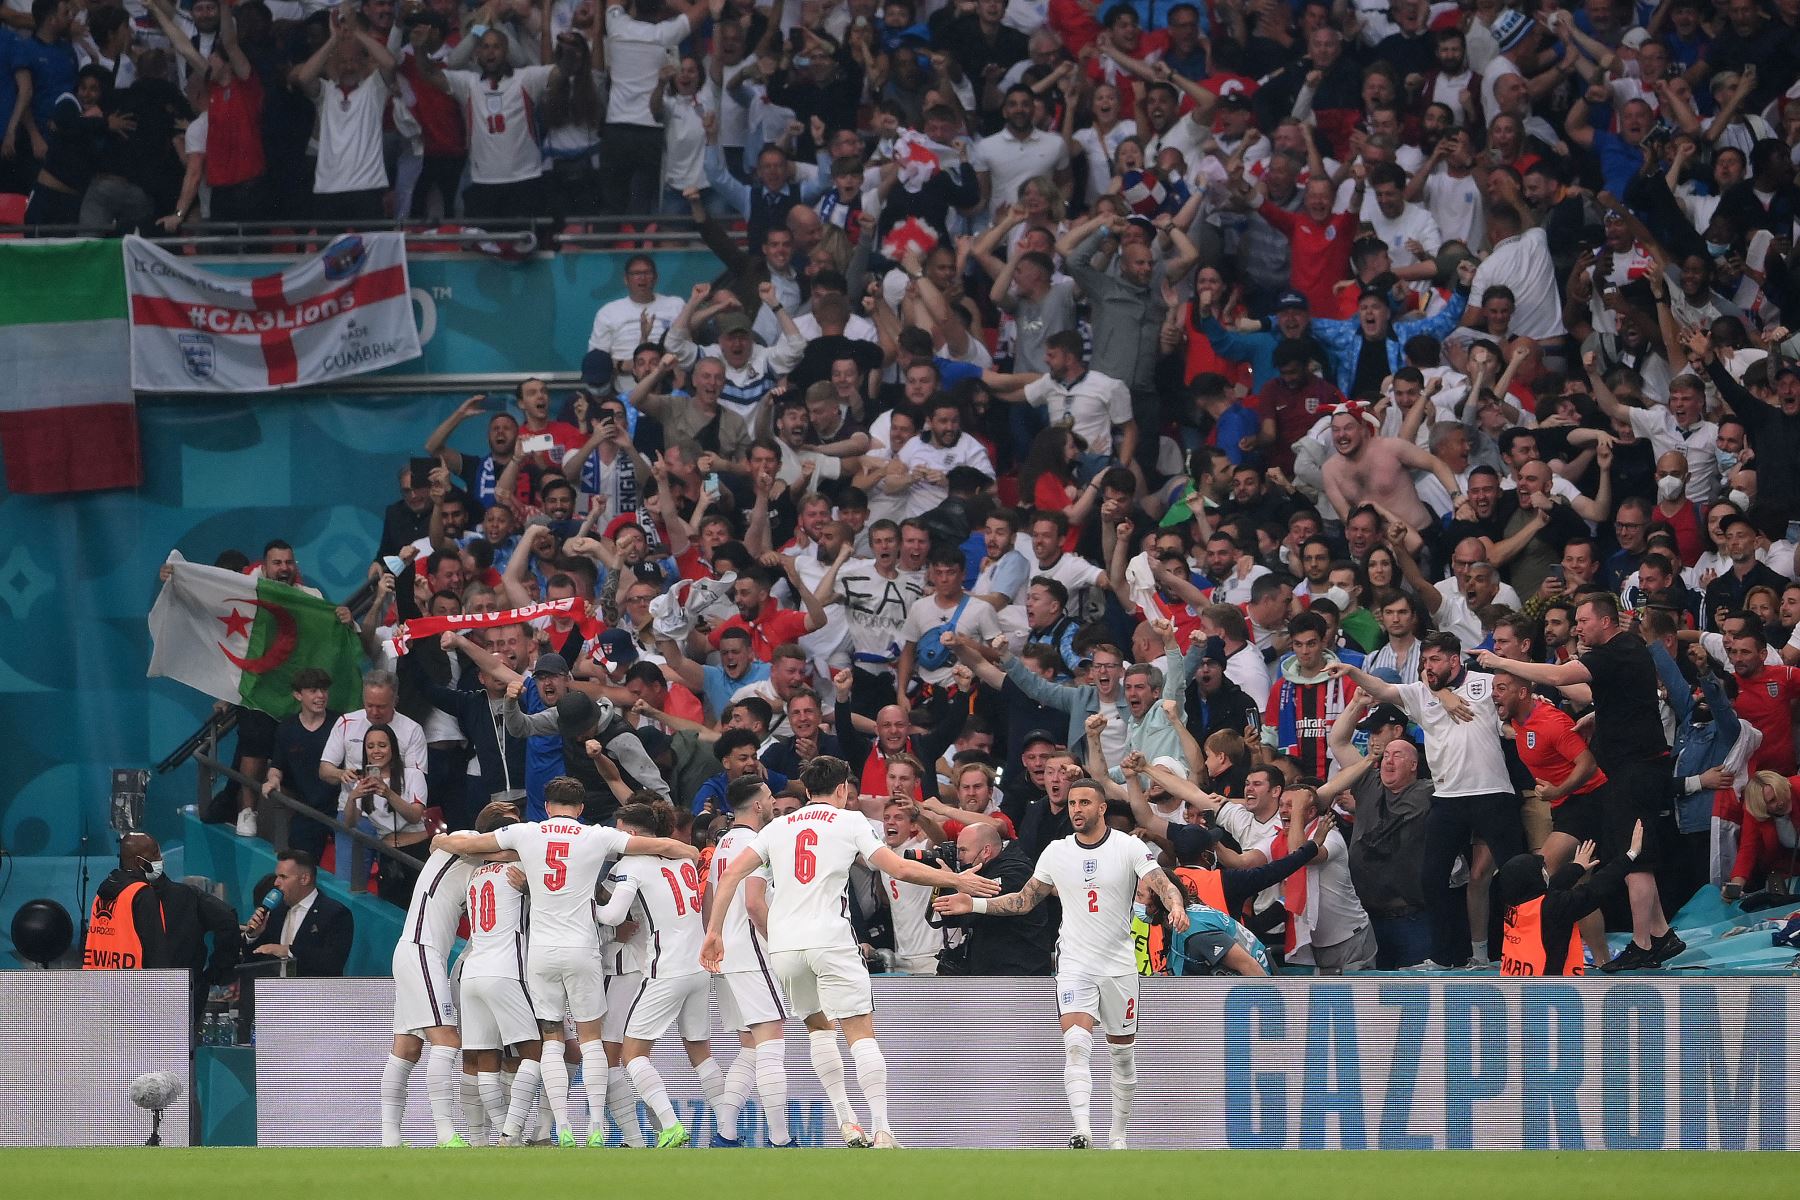 Los jugadores de Inglaterra celebran su primer gol durante el partido de fútbol final de la UEFA EURO 2020 entre Italia e Inglaterra en el estadio de Wembley en Londres.
Foto: AFP